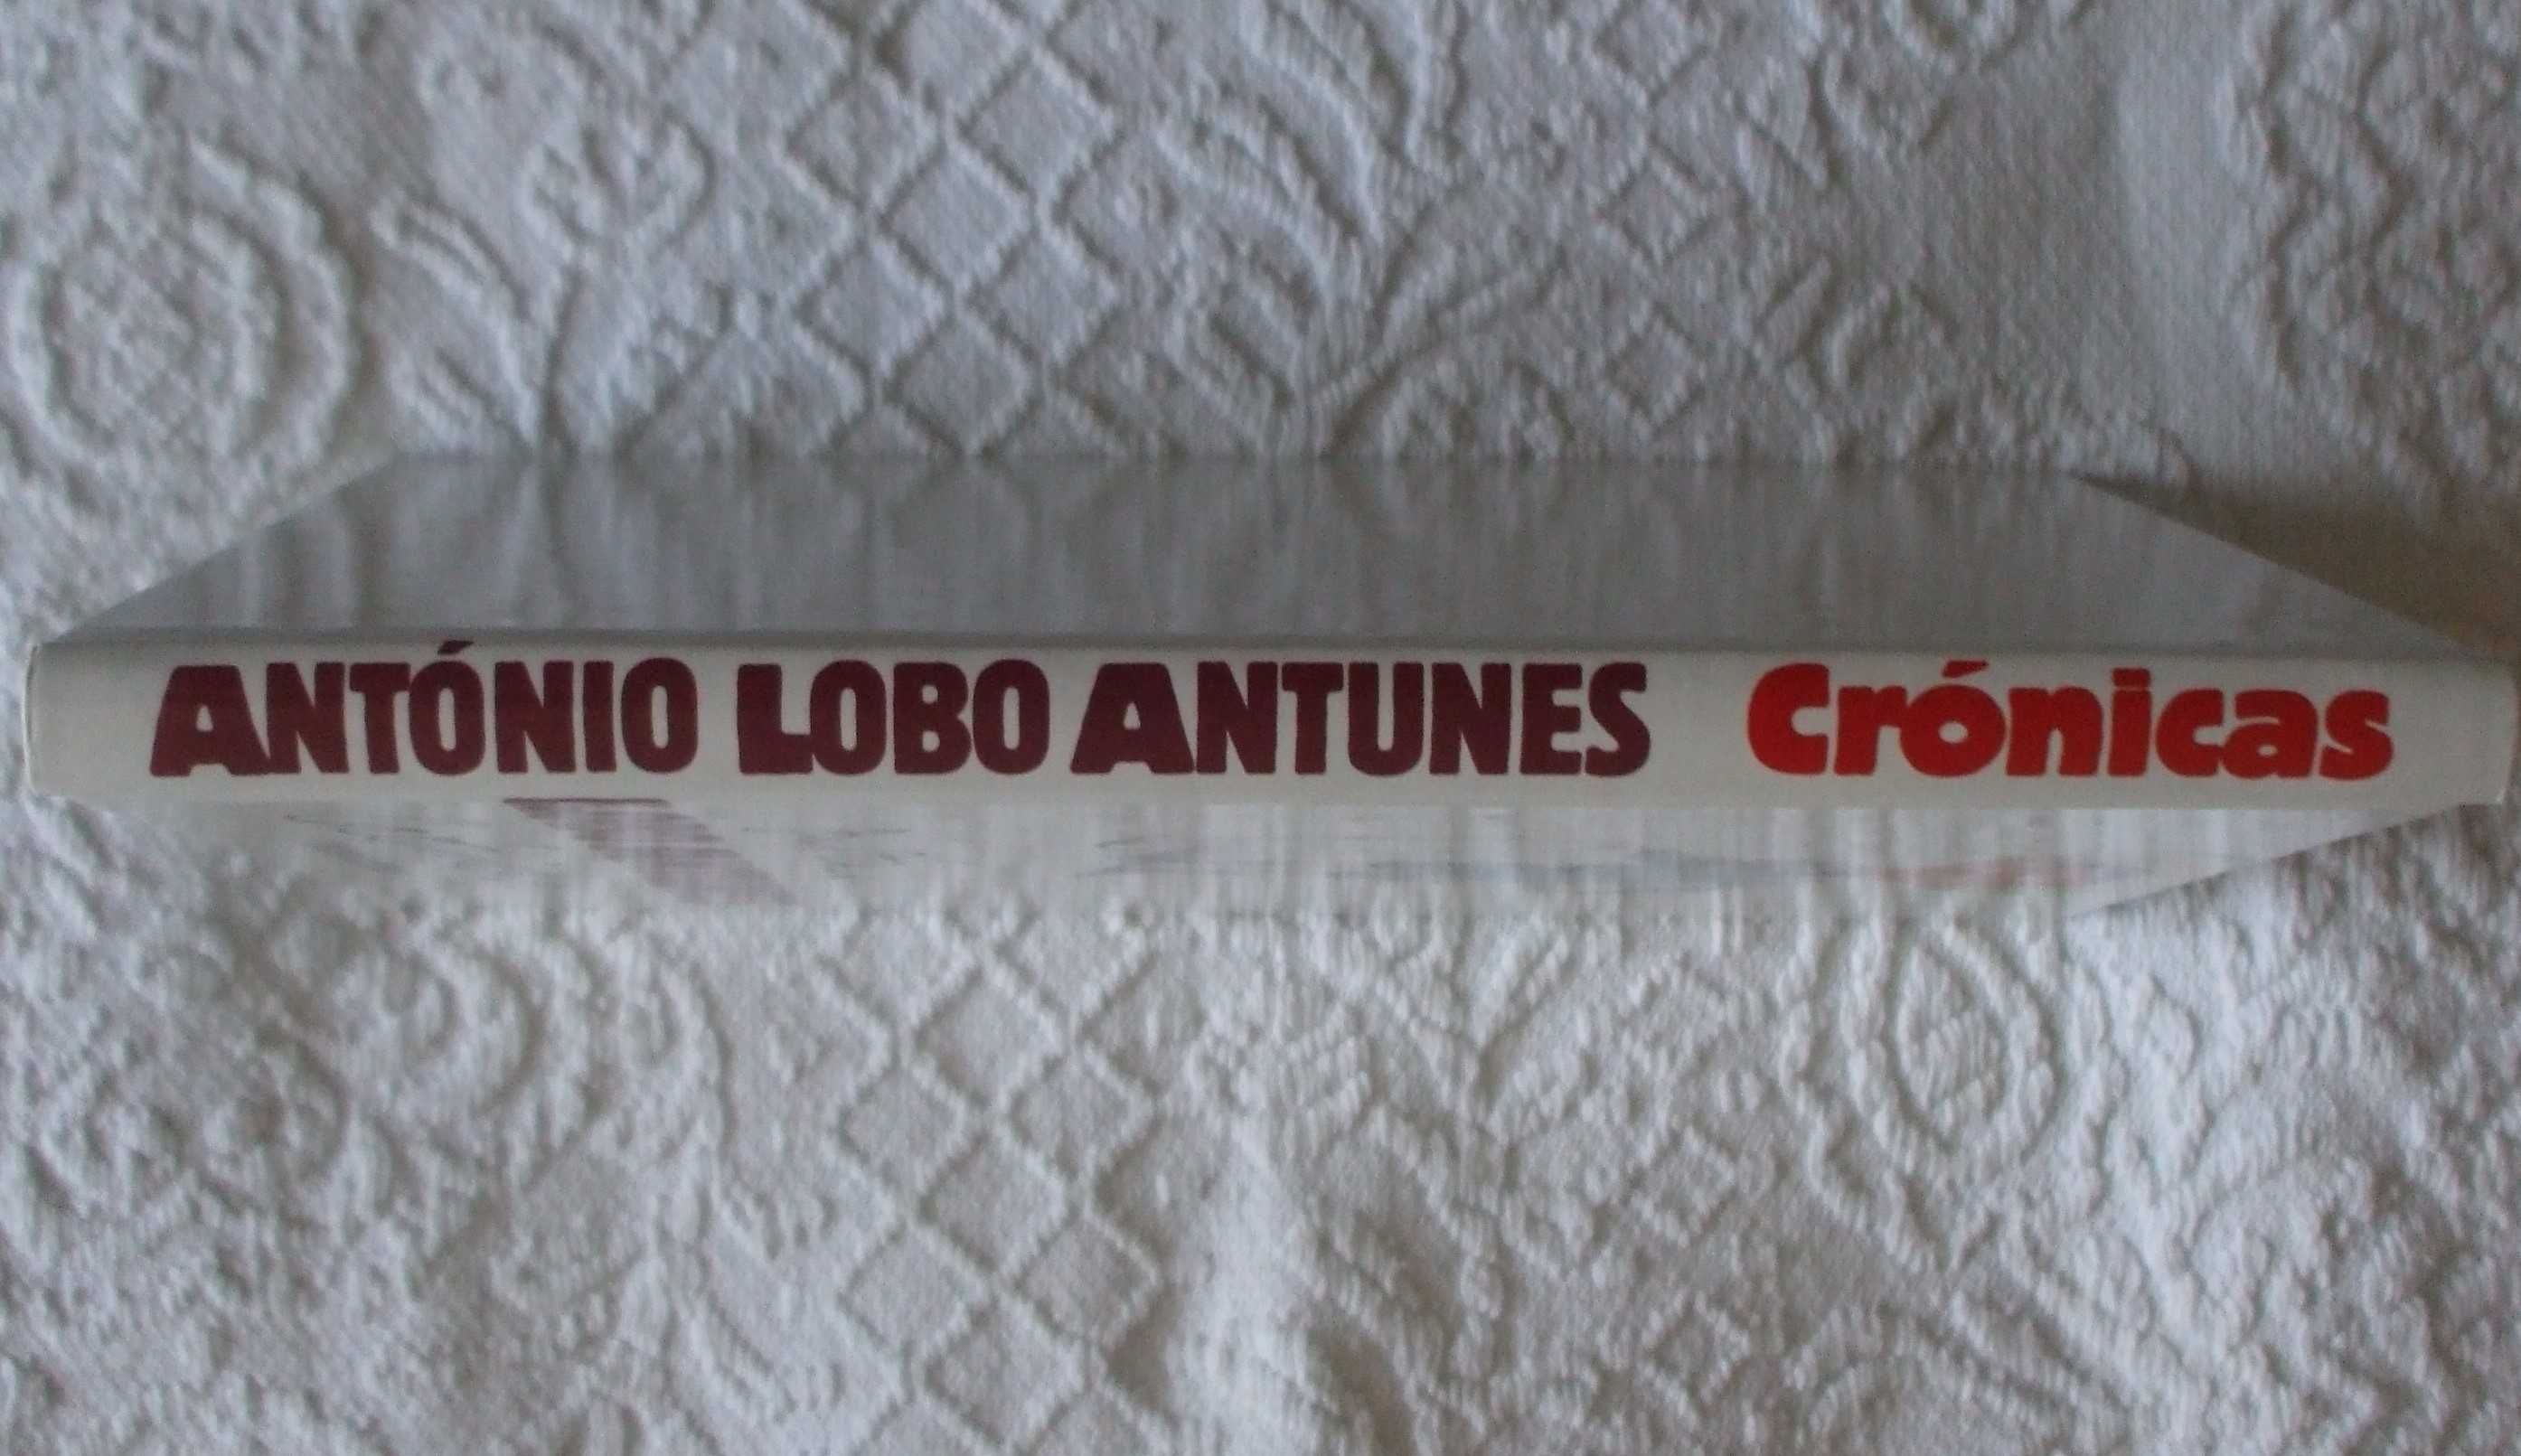 Crónicas do Público 1, António Lobo Antunes